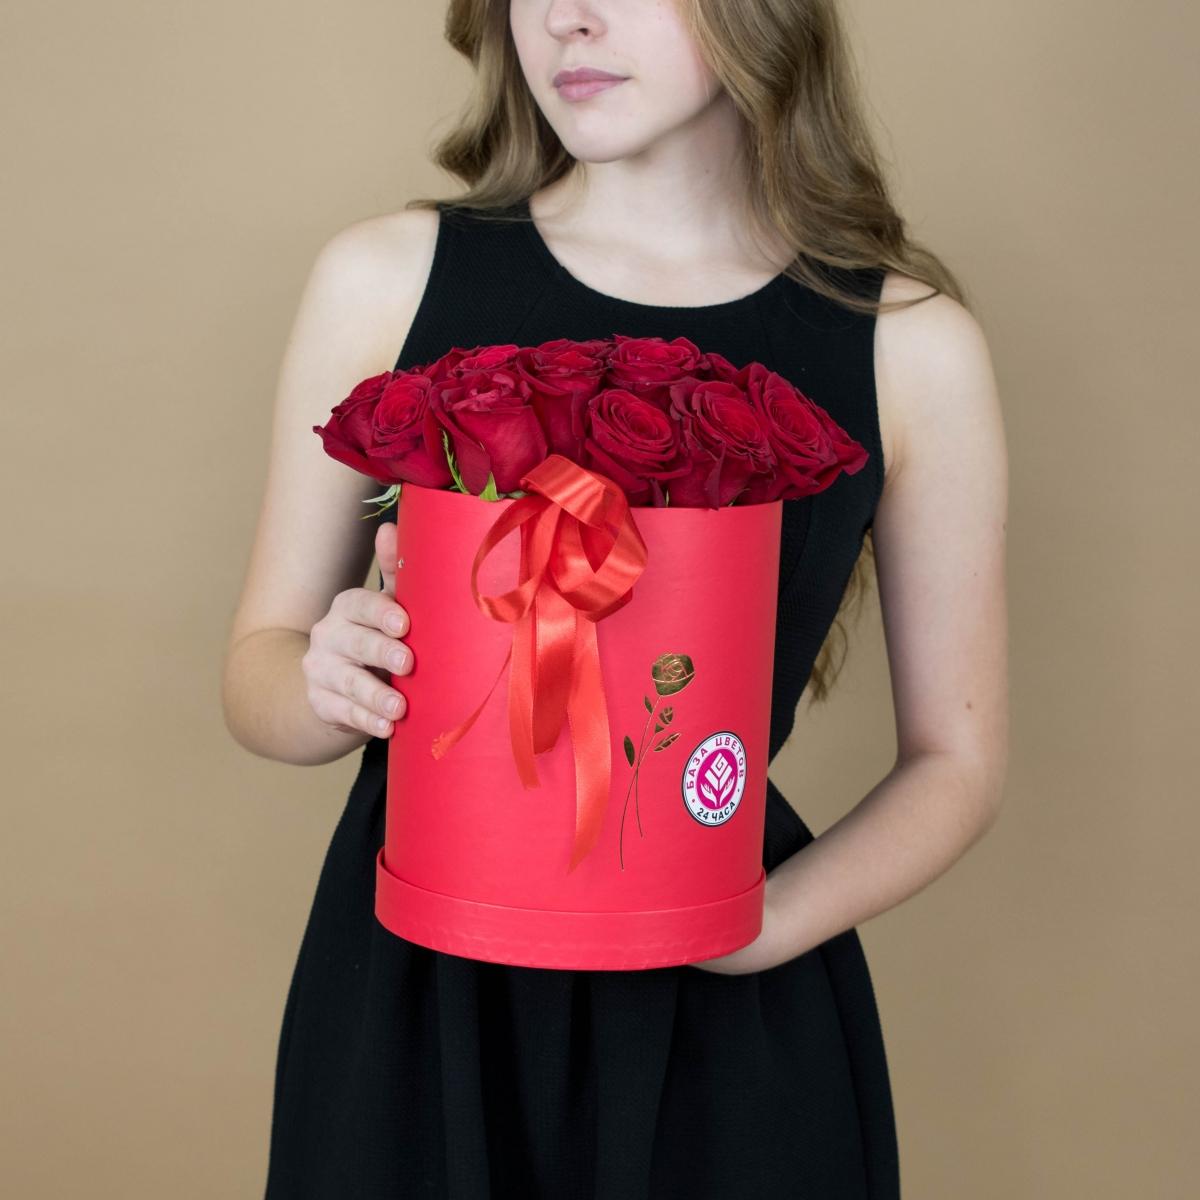 Розы красные в шляпной коробке (№  2301)